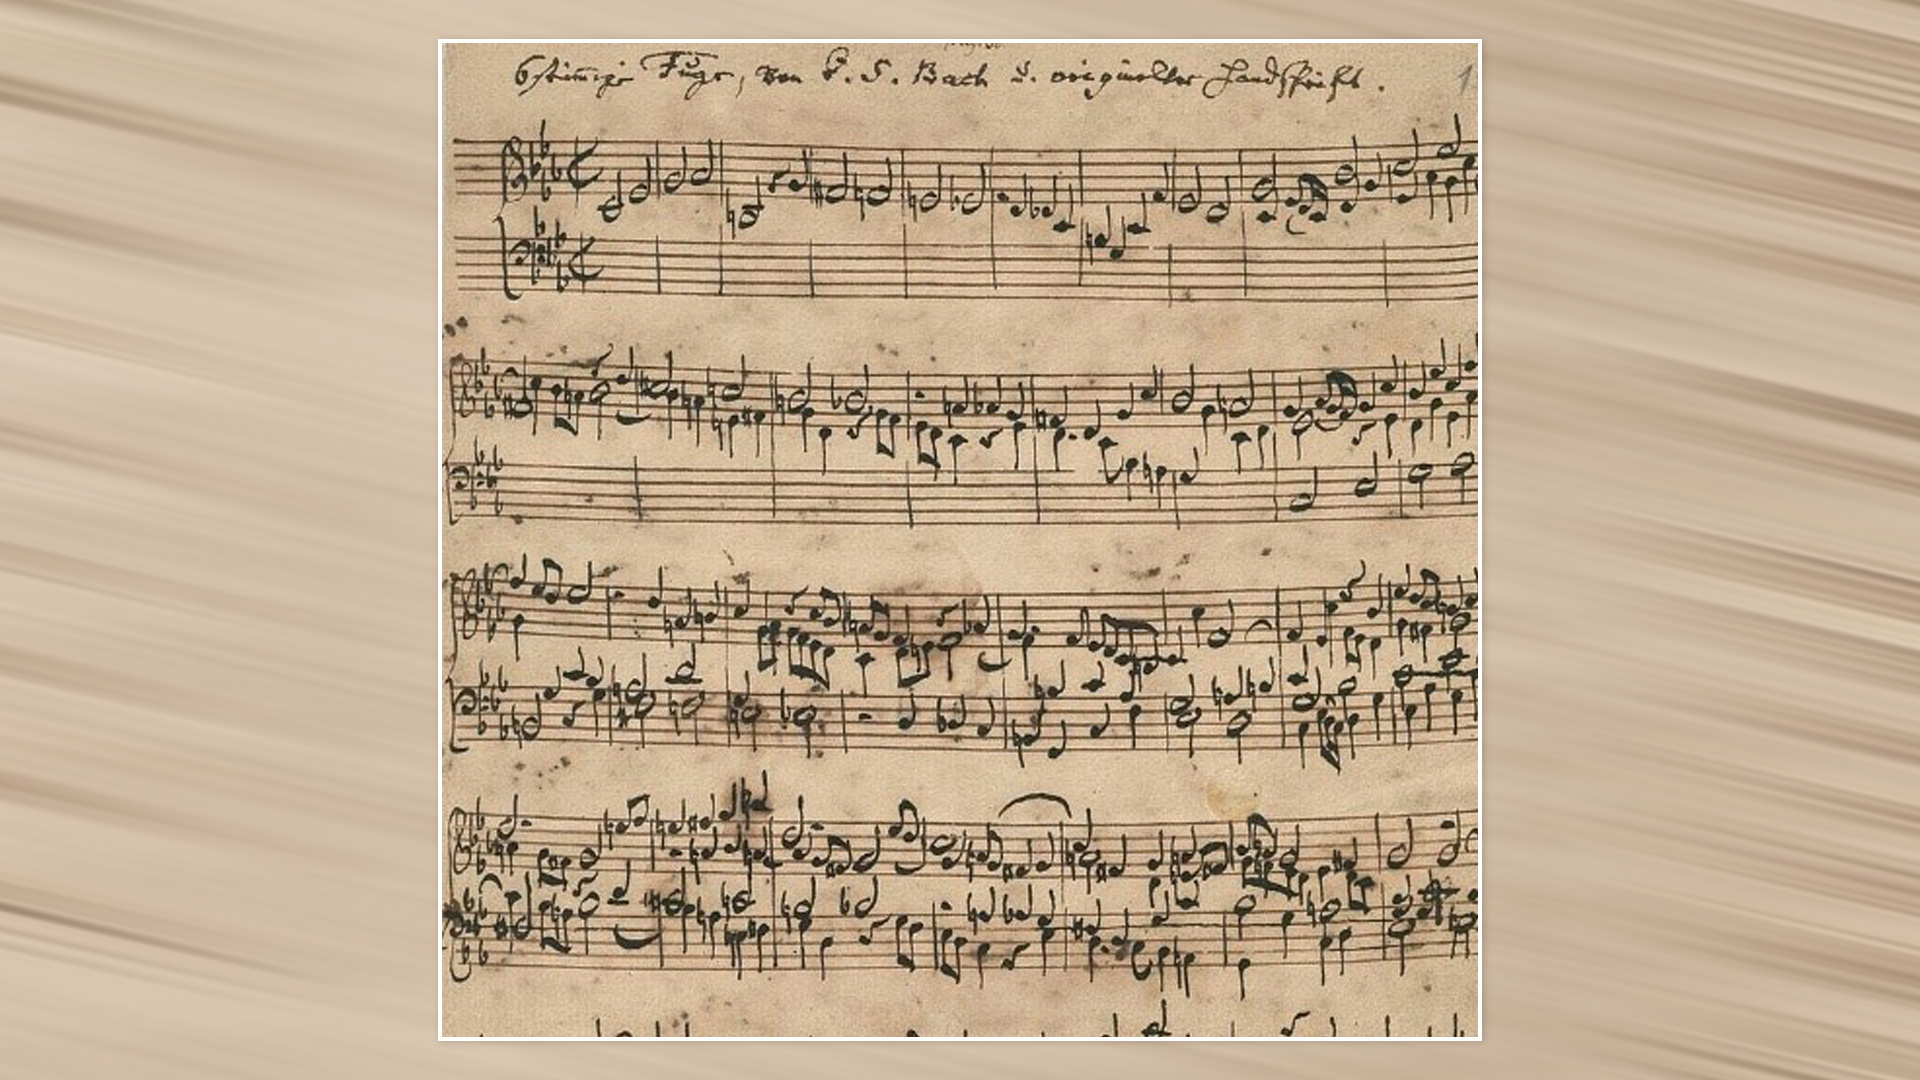 الصفحة الأولى من مخطوطة ""Ricercar a 6" BWV 1079"